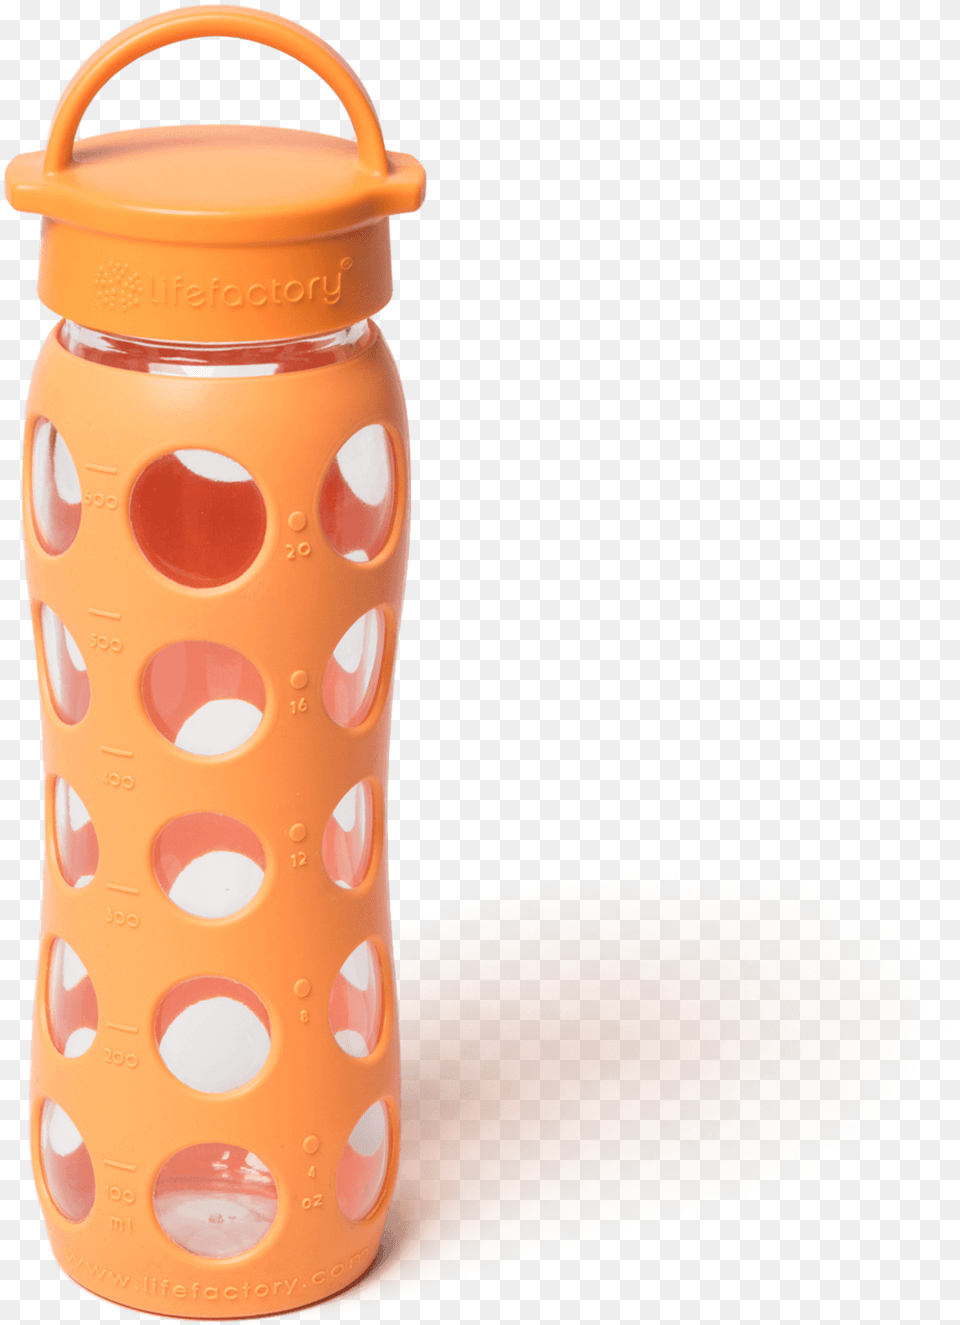 Water Bottle, Water Bottle, Jar, Shaker Free Png